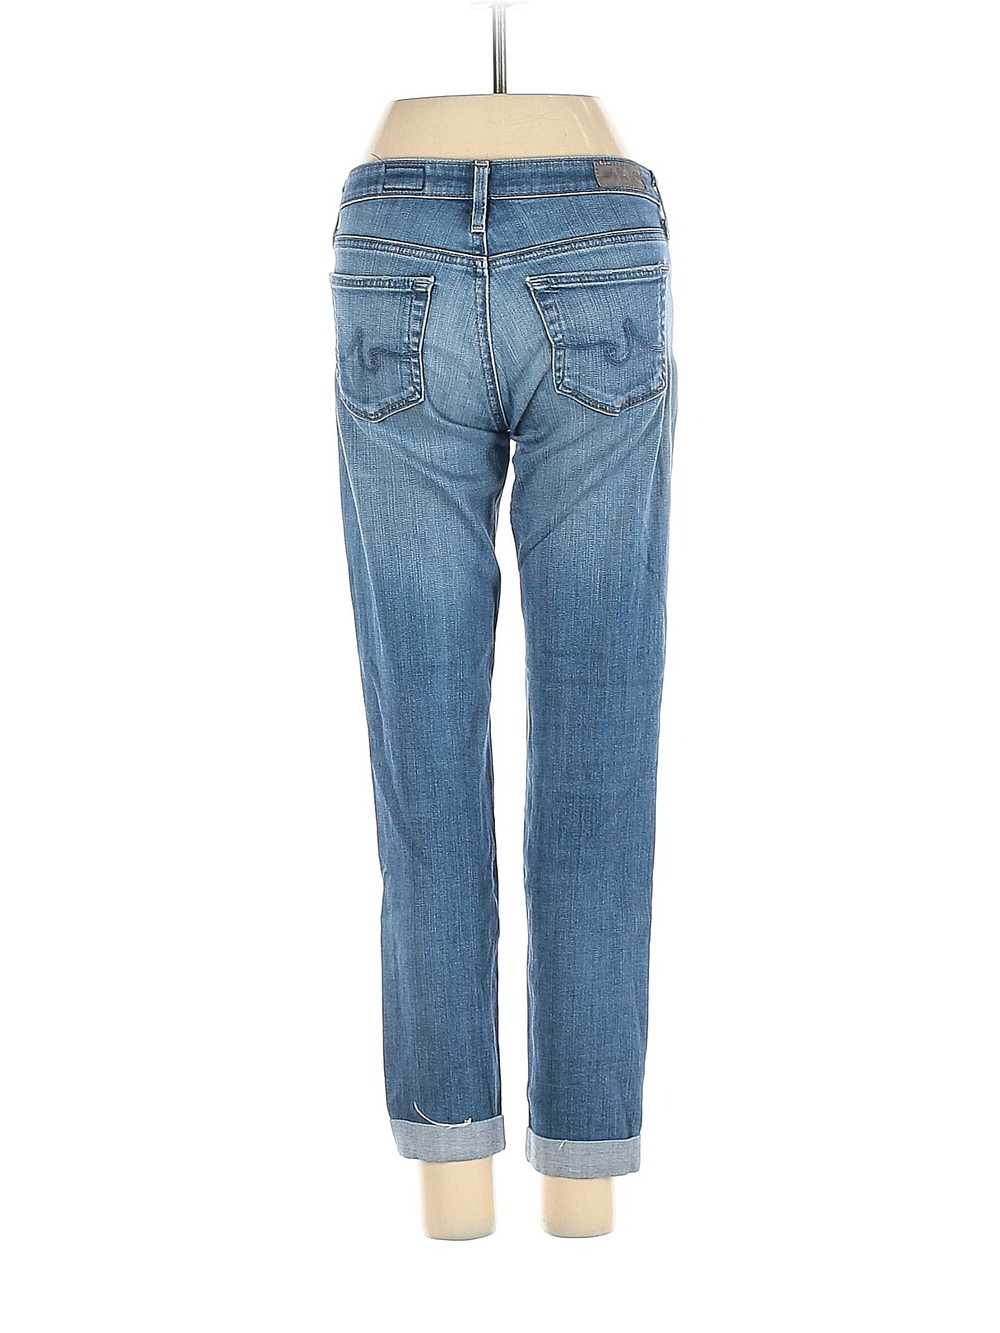 Adriano Goldschmied Women Blue Jeans 24 W Petites - image 2